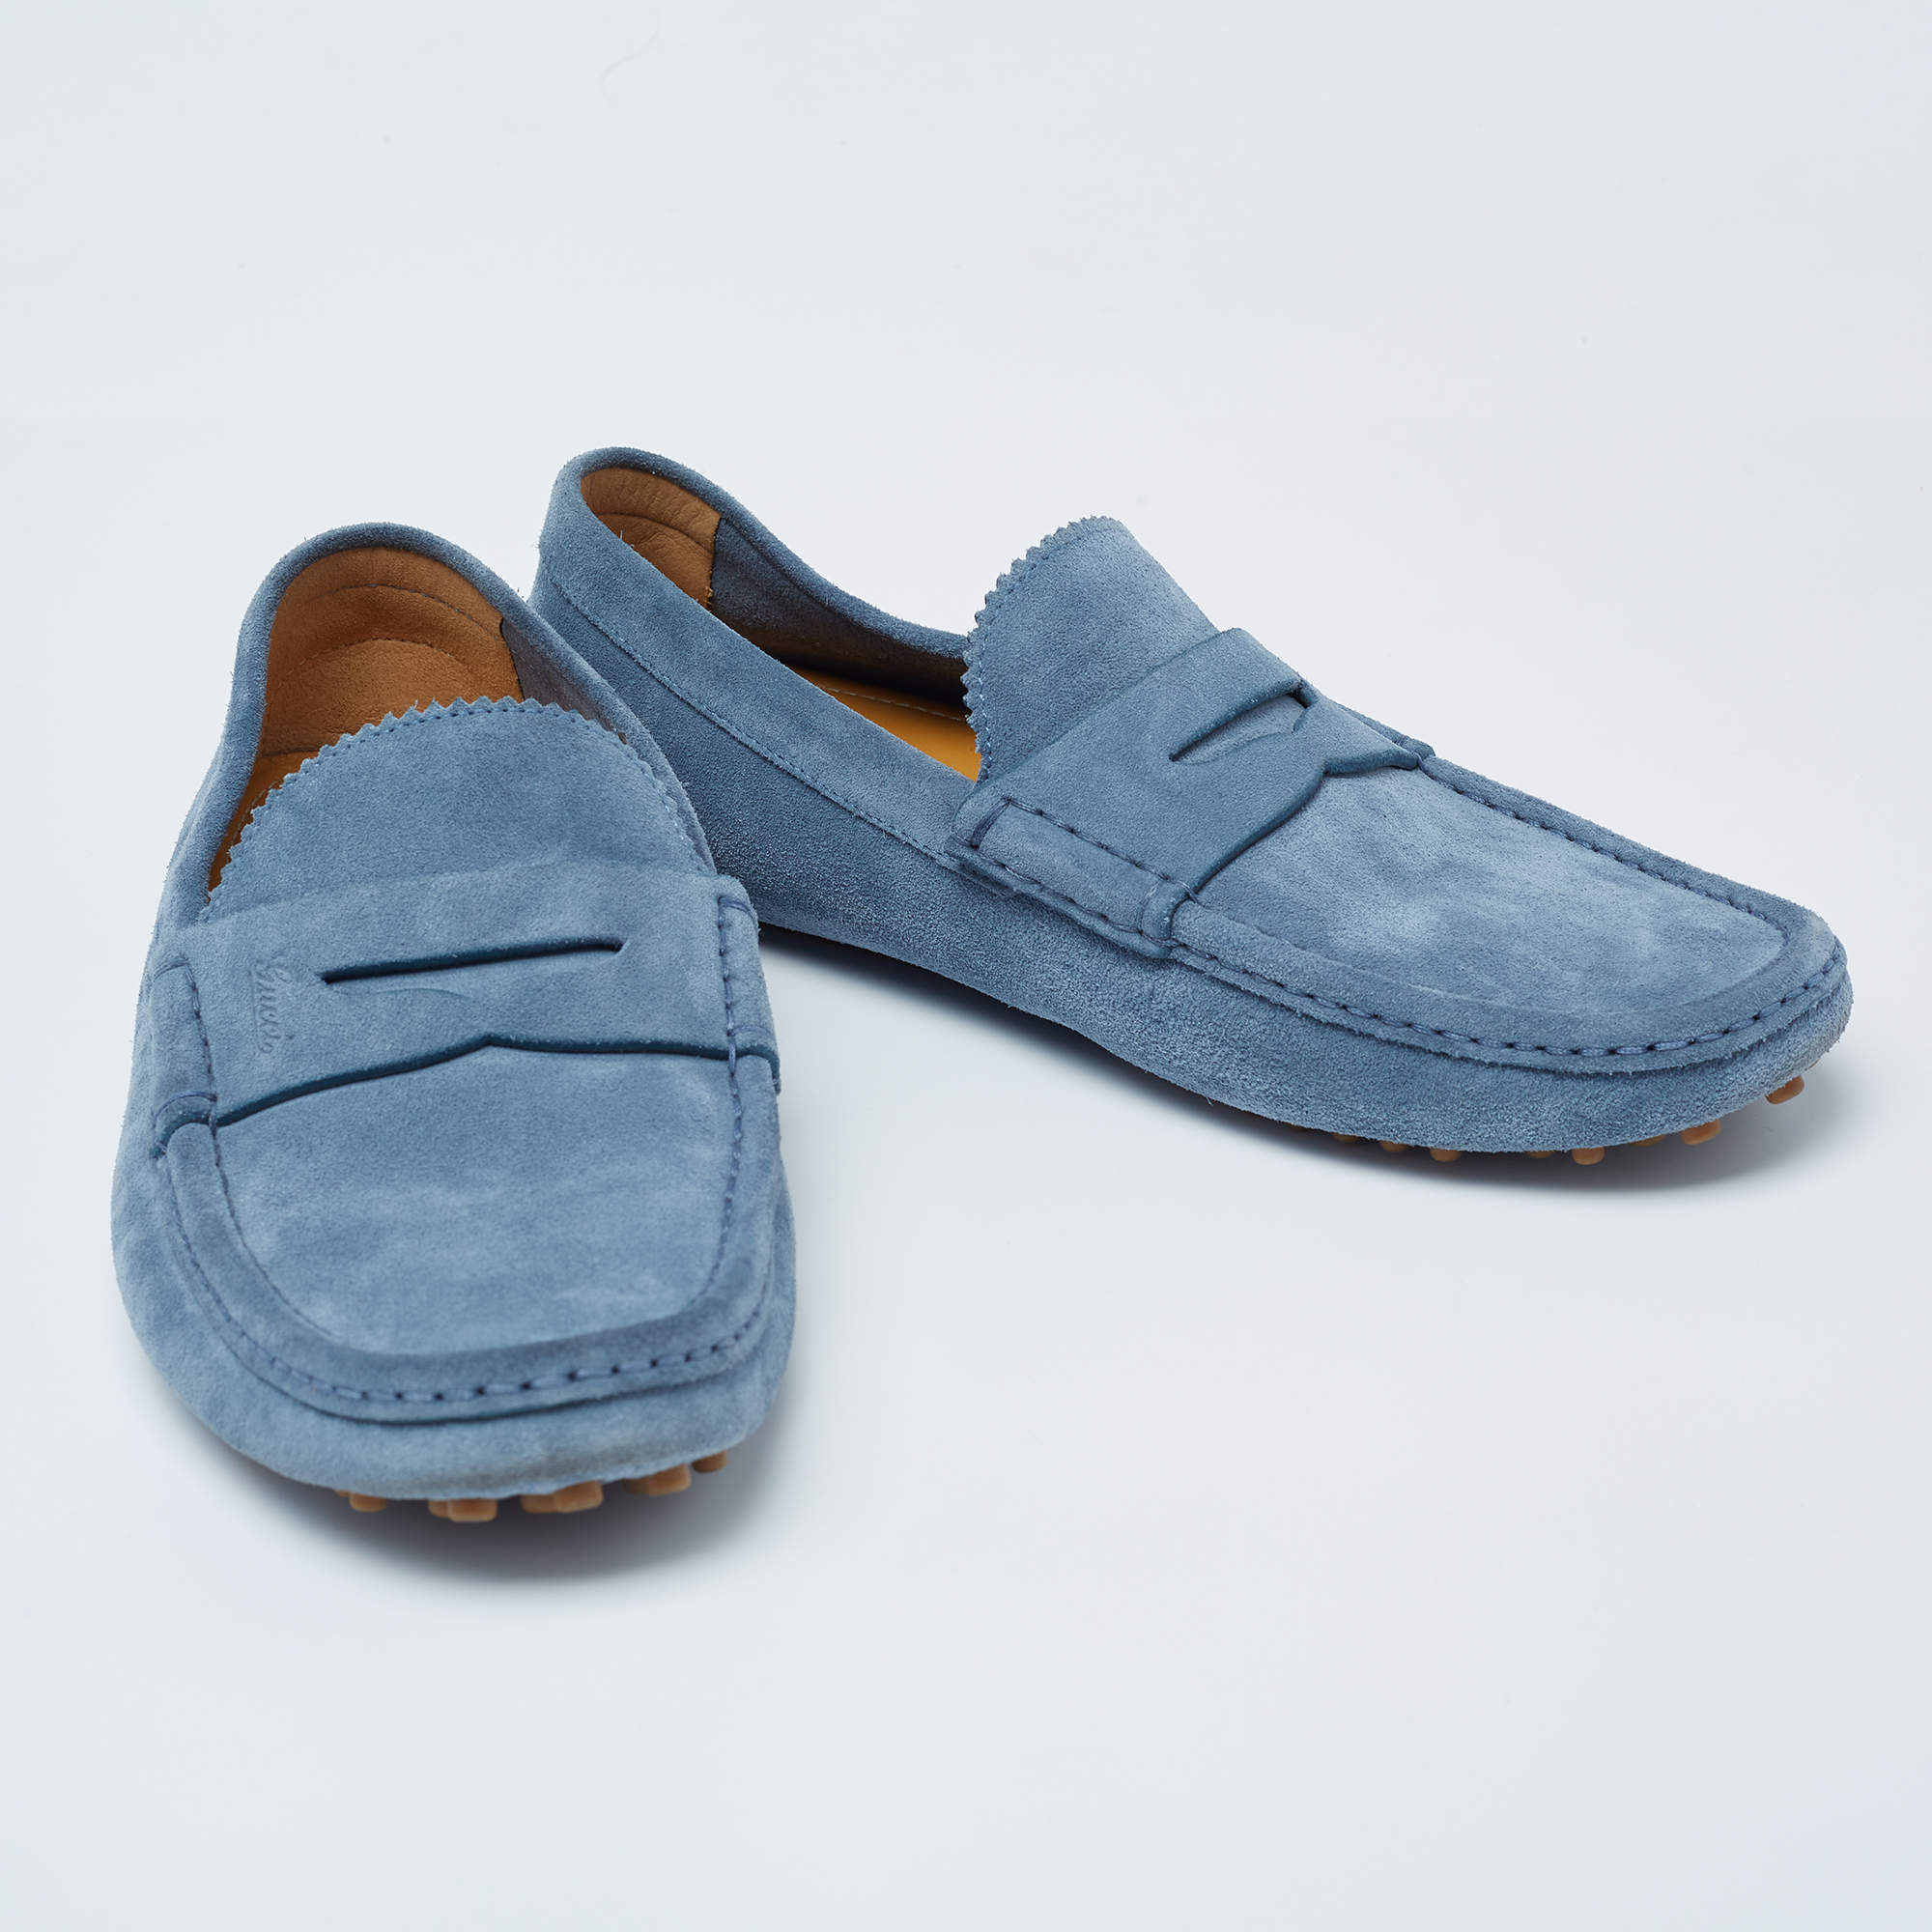 Gucci Leather Loafers Driver Shoes UK 6 US 7 EUR 40 Men Blue Diamante Script